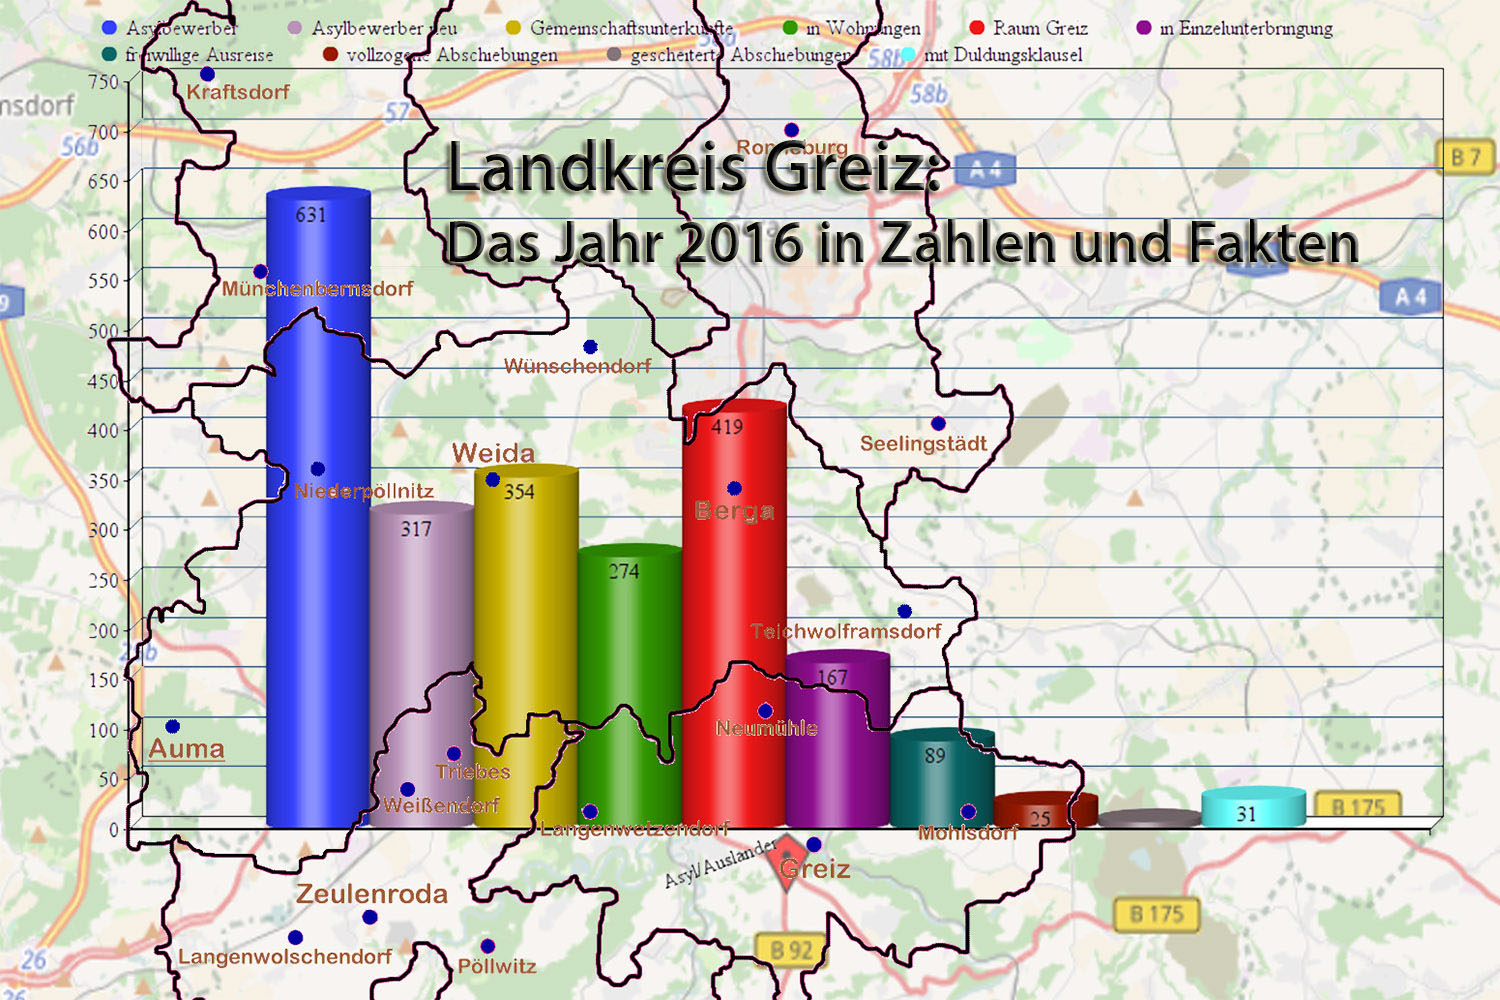 Landkreis Greiz: Das Jahr 2016 in Zahlen und Fakten